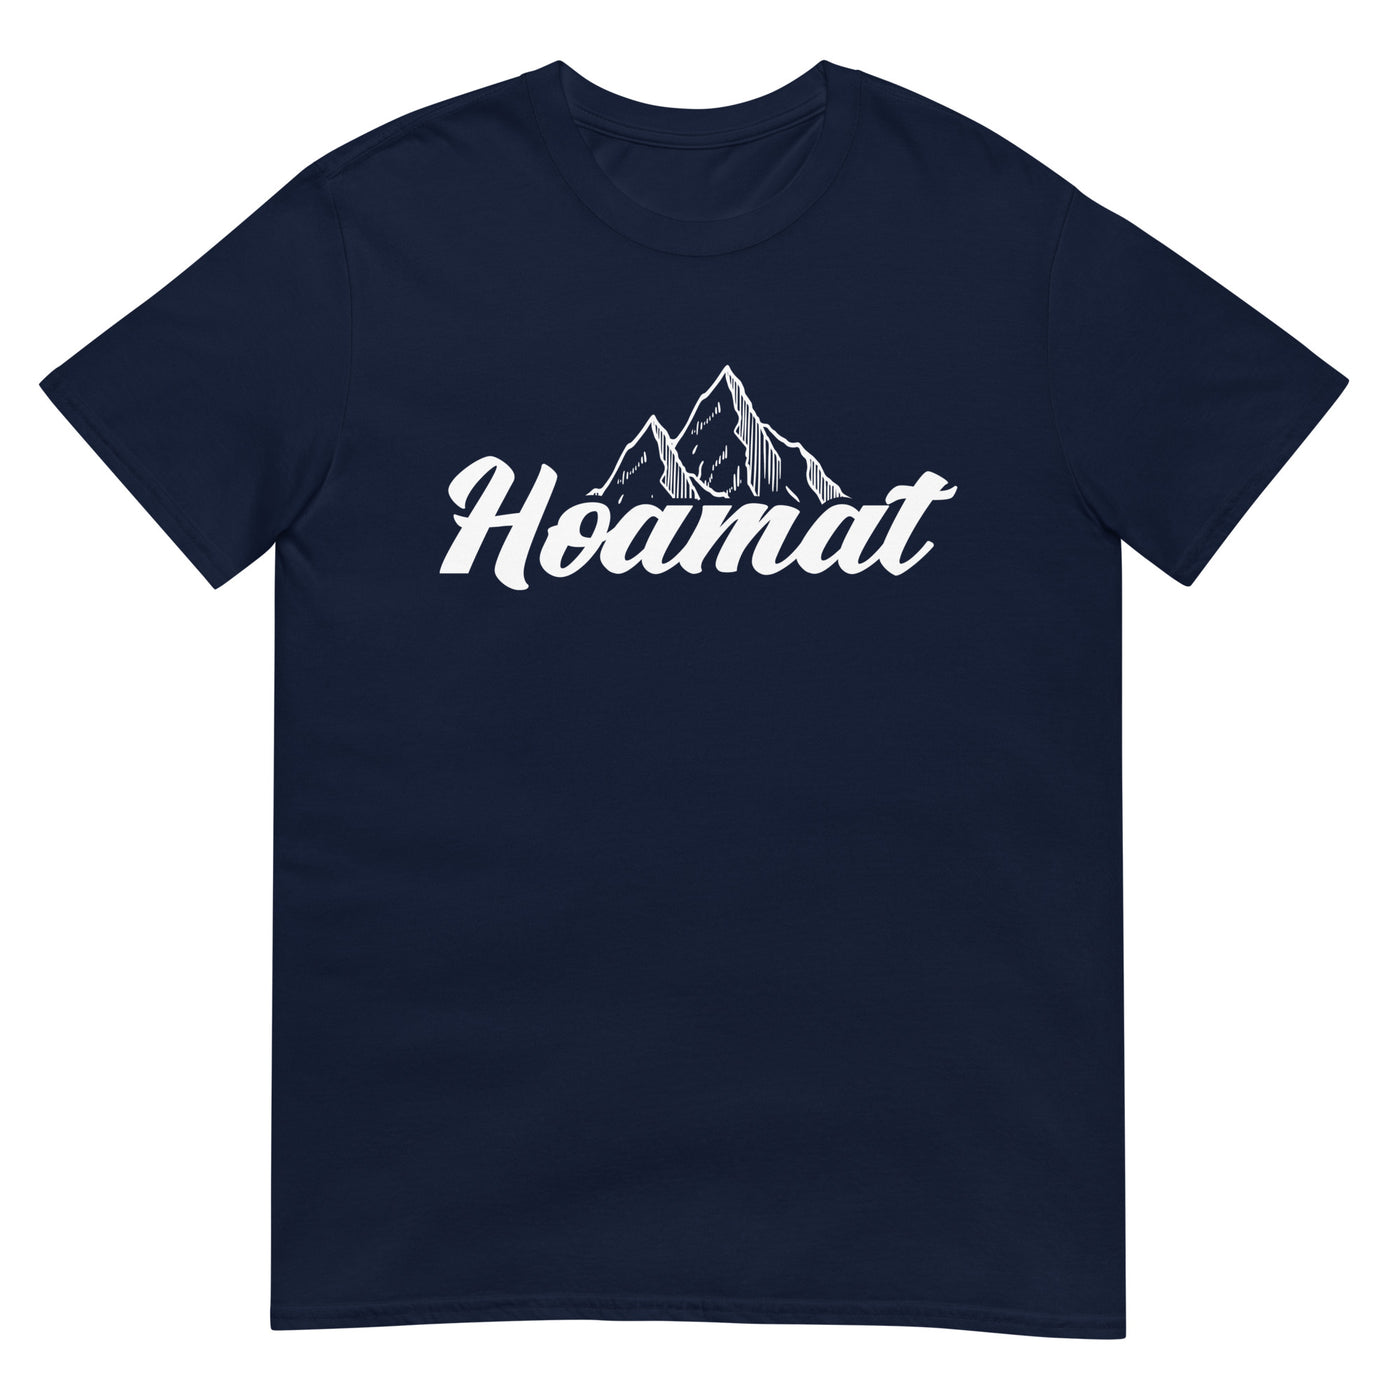 Hoamat - T-Shirt (Unisex) berge xxx yyy zzz Navy